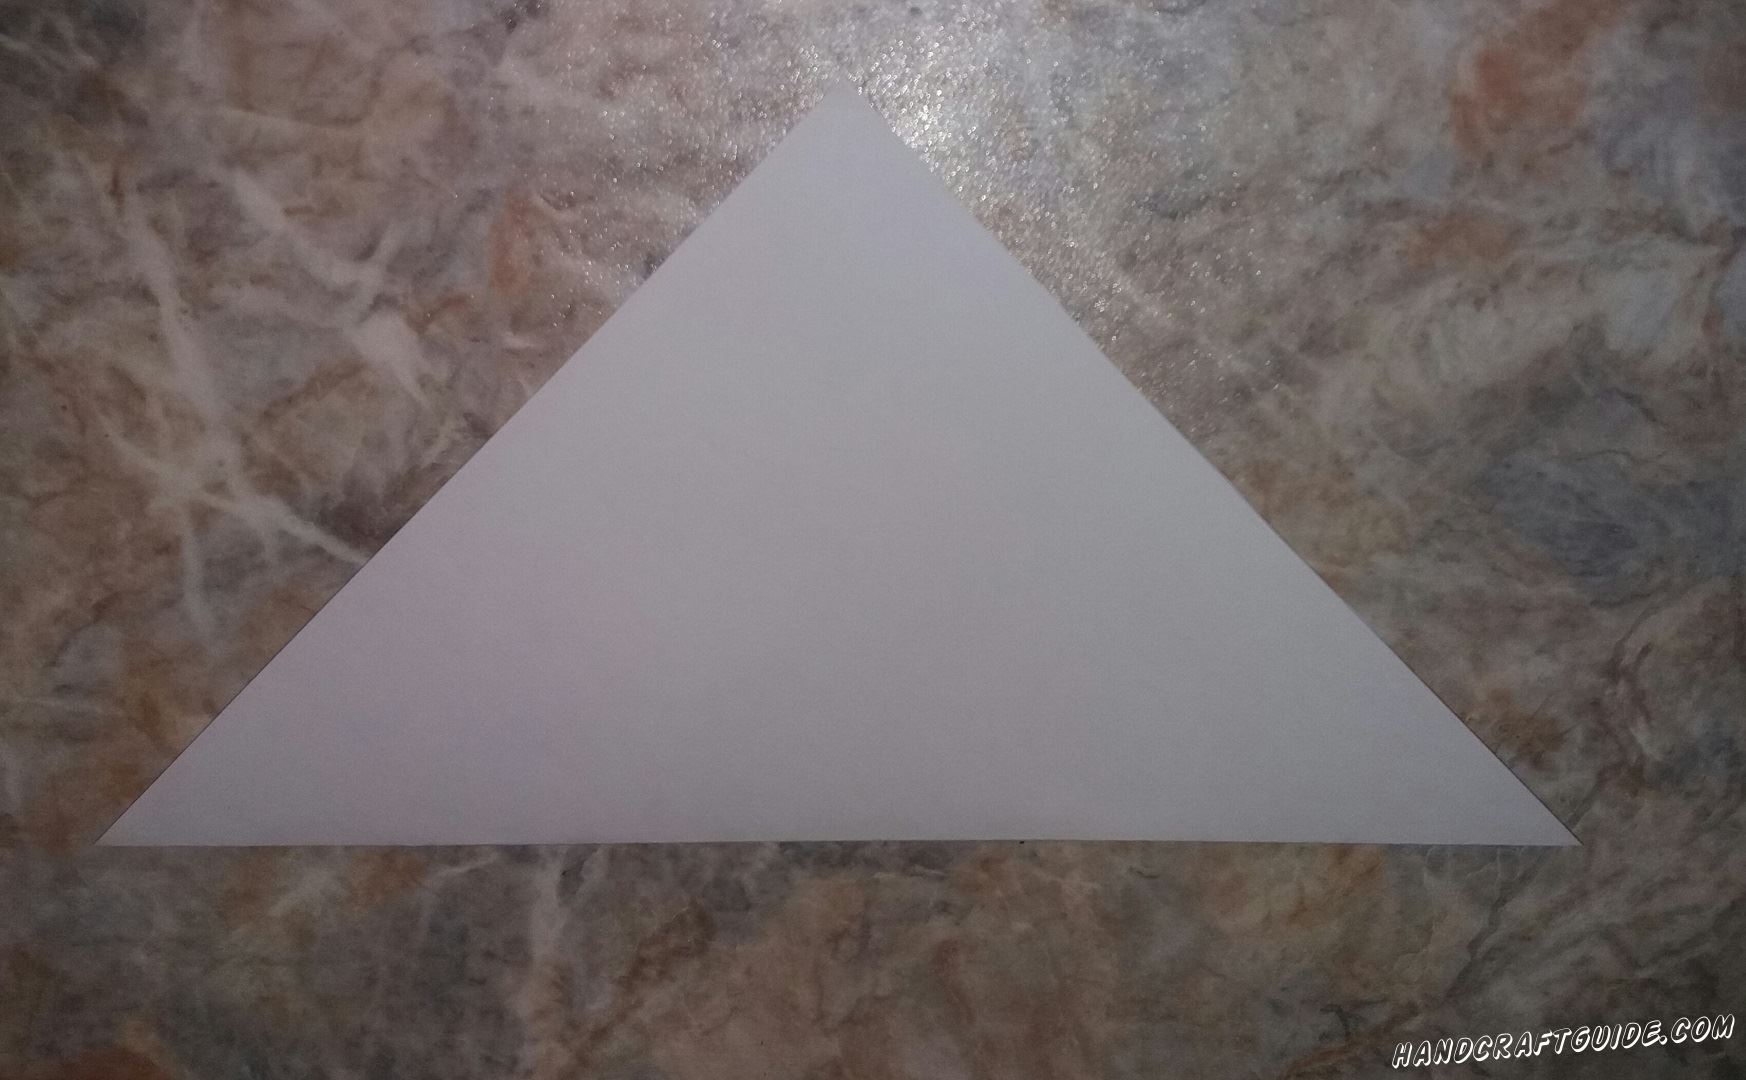 Оставшийся треугольник аккуратно загибаем, как показано на фото.